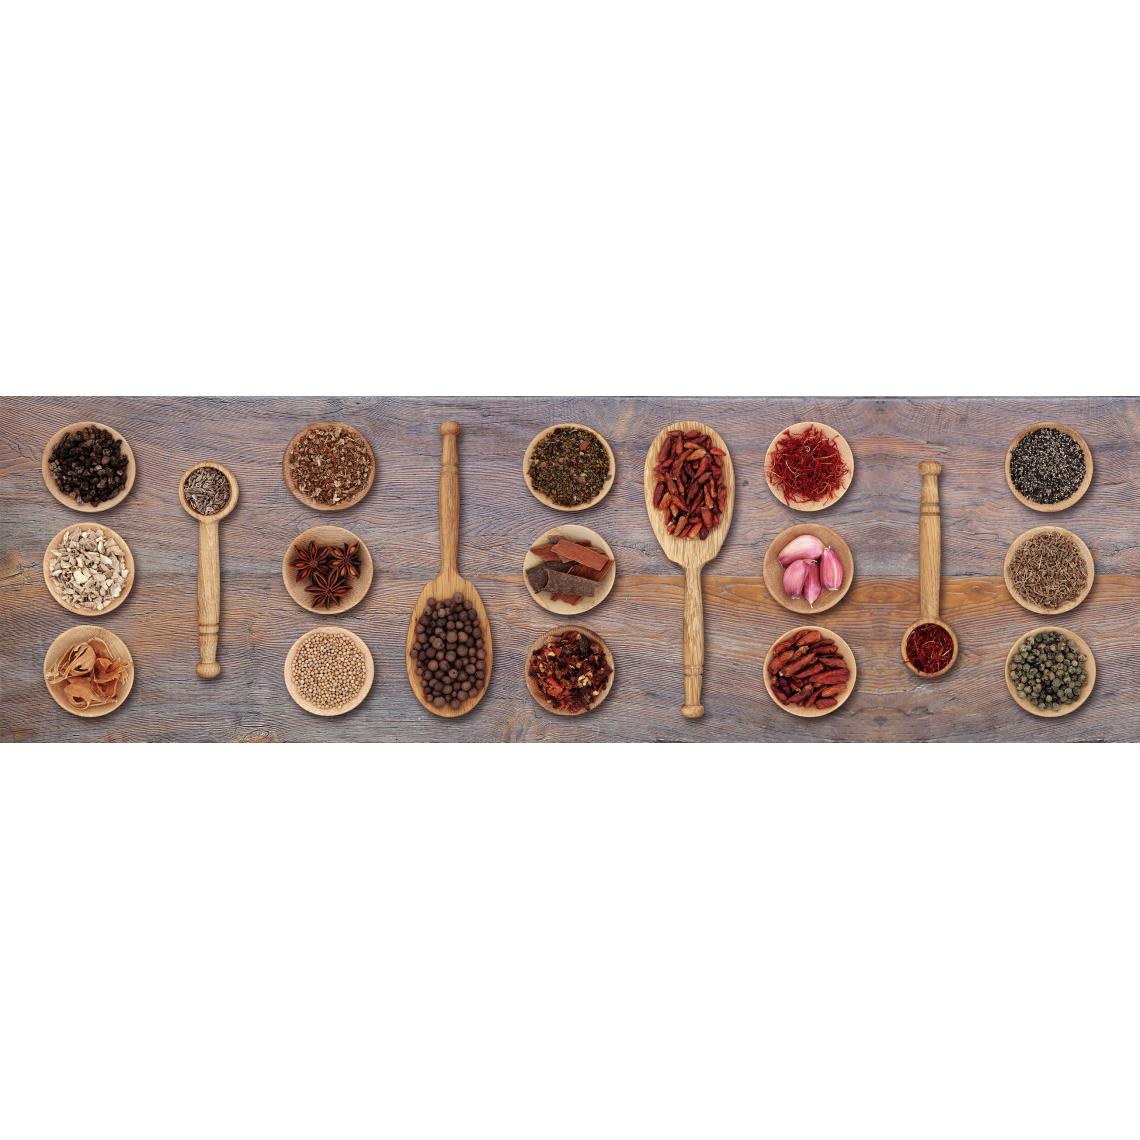 Alter - Chemin de cuisine, 100% Made in Italy, Tapis antitache avec impression numérique, Tapis antidérapant et lavable, Modèle Emily, 120x52 cm - Tapis